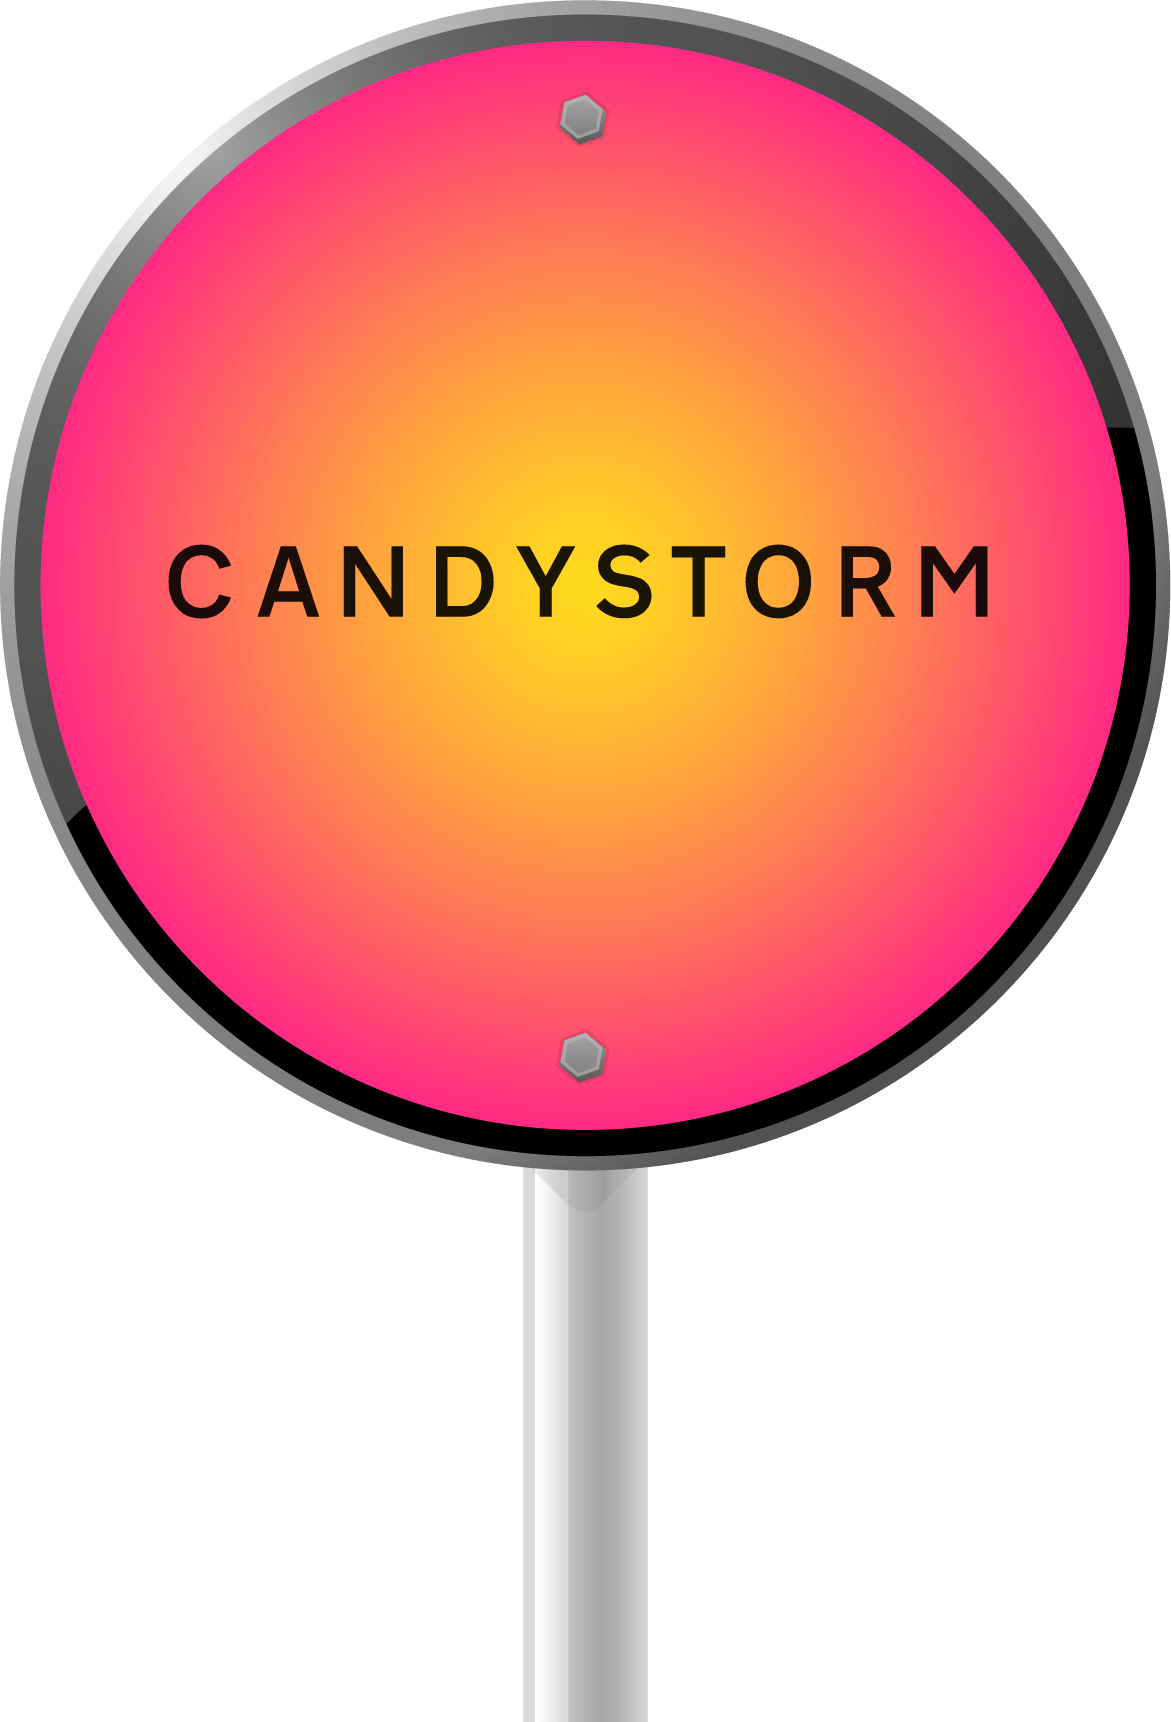 Hvad er en candystorm? (definition) – det er også kendt som en "lovestorm"